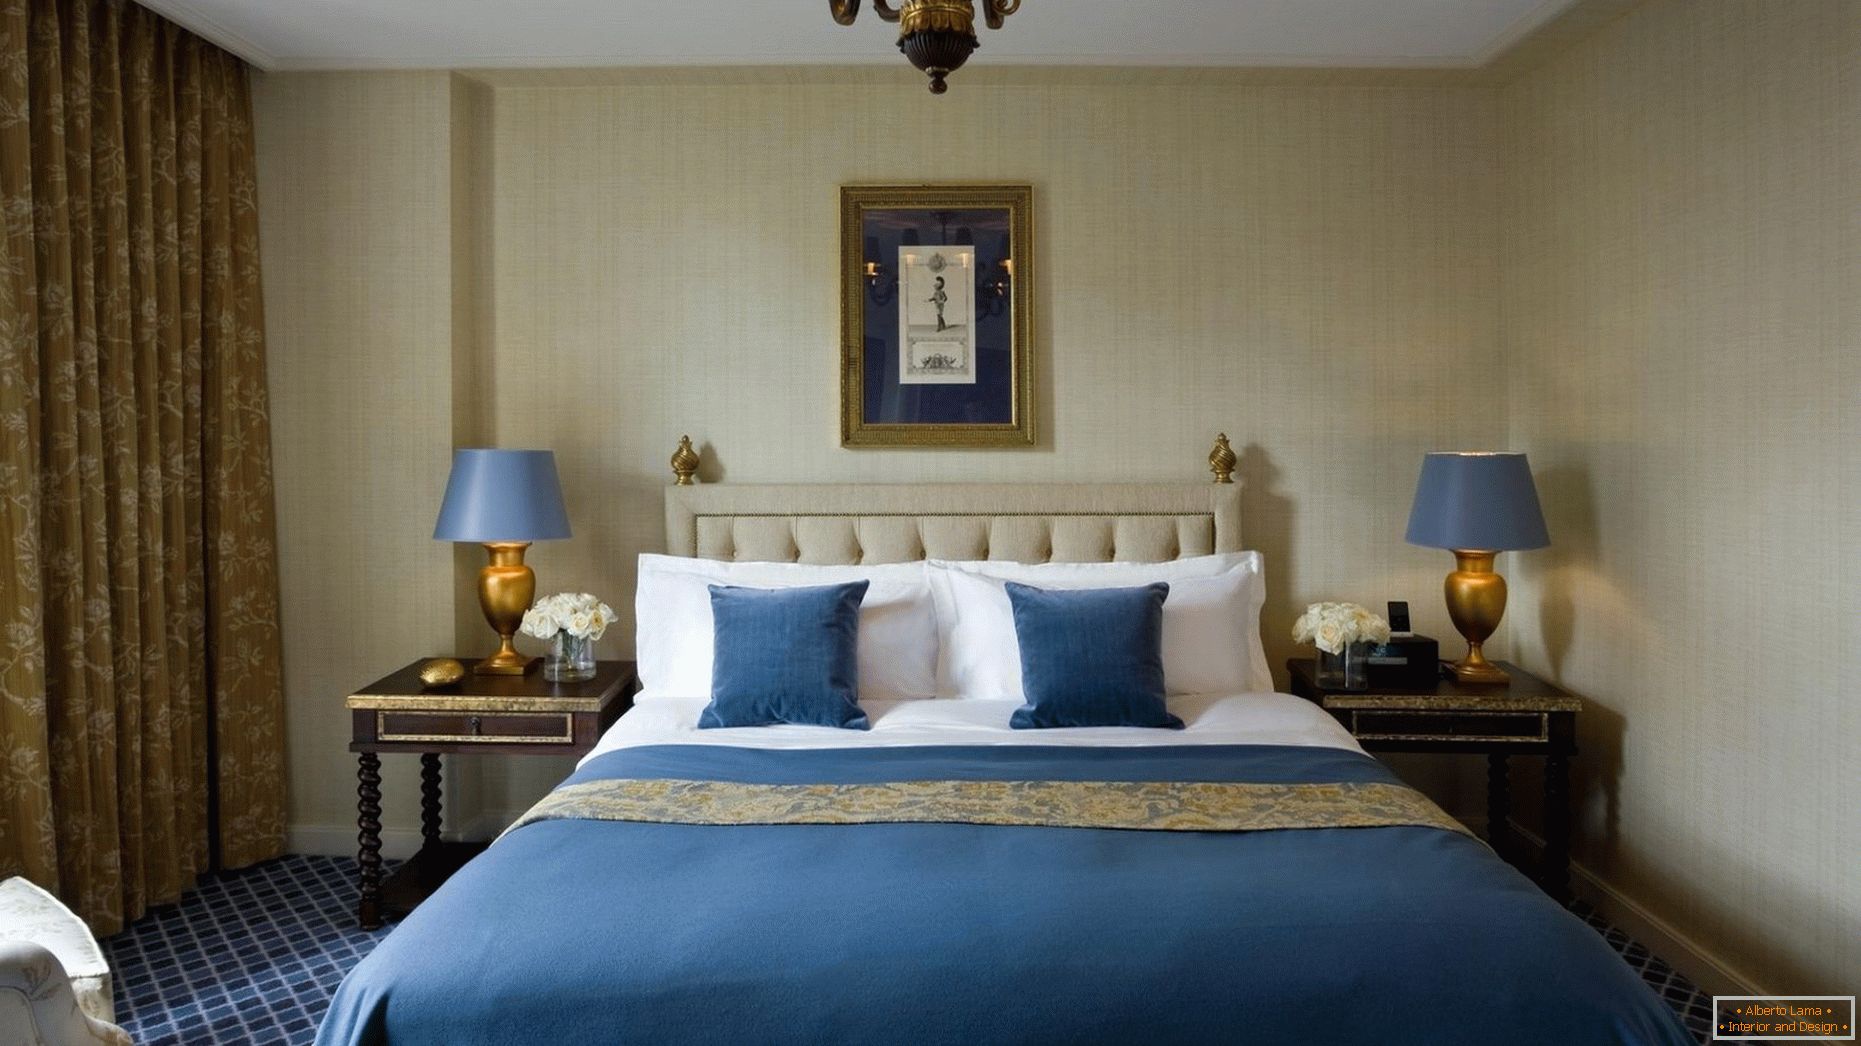 Plave i zlatne nijanse u unutrašnjosti spavaće sobe